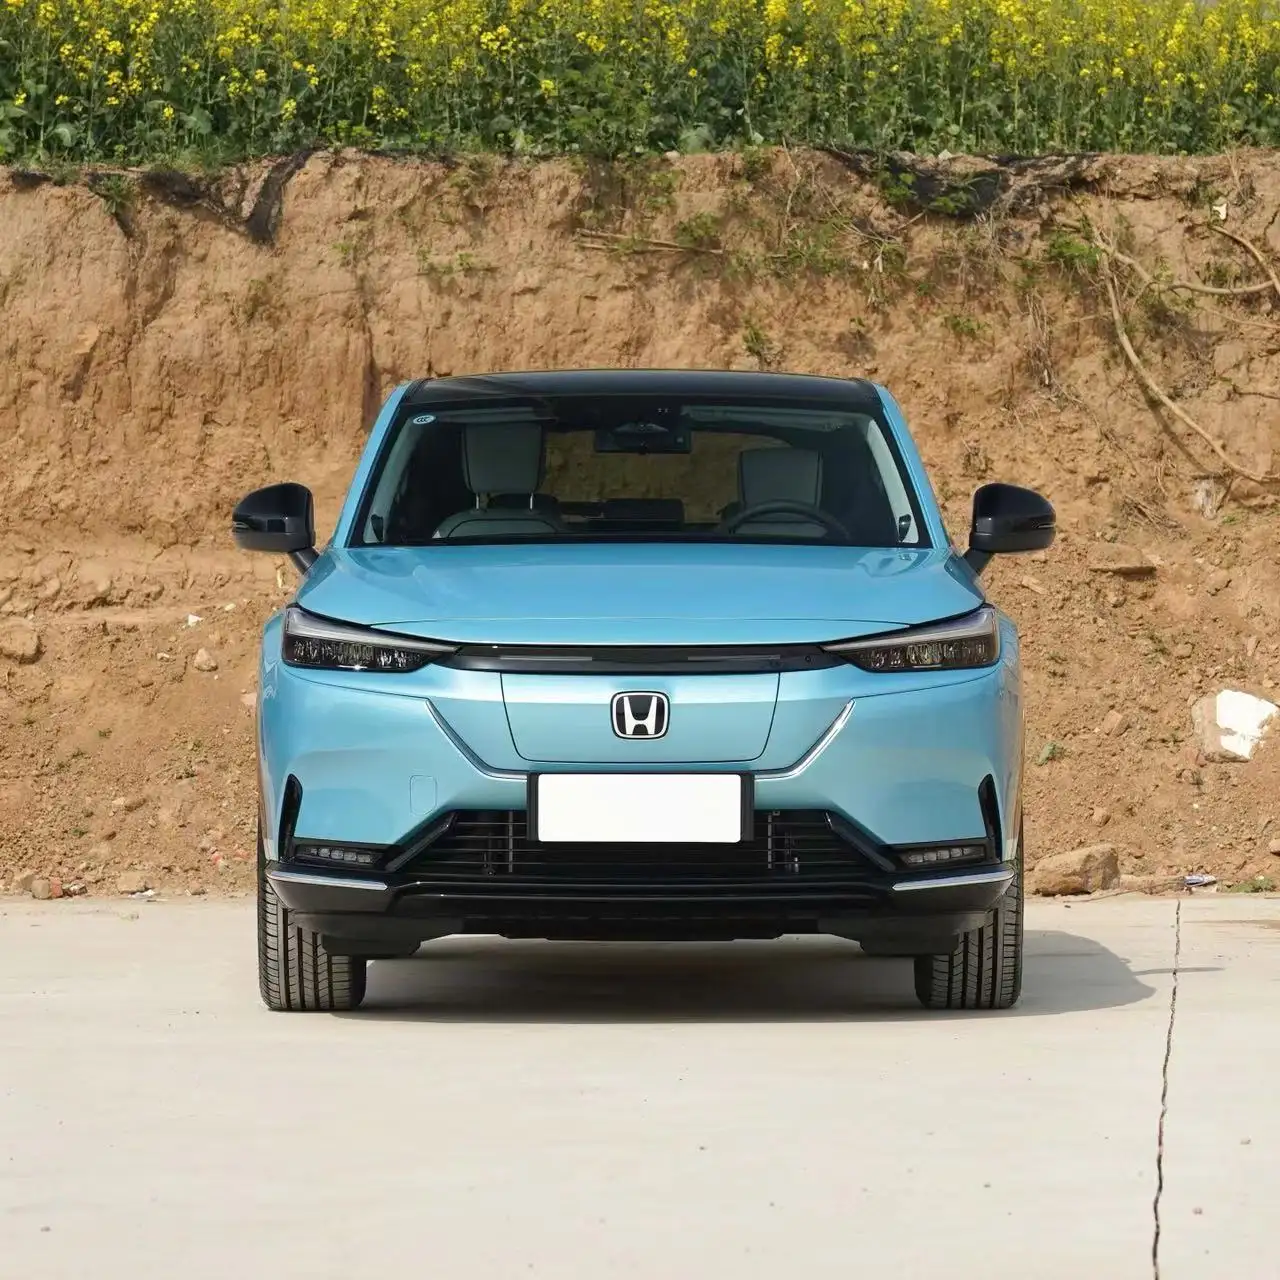 2023 beste Qualität 510km Reichweite Neue Elektro fahrzeuge China Ev Cars Hochgeschwindigkeits-SUV 100% elektrisch für Honda ens1